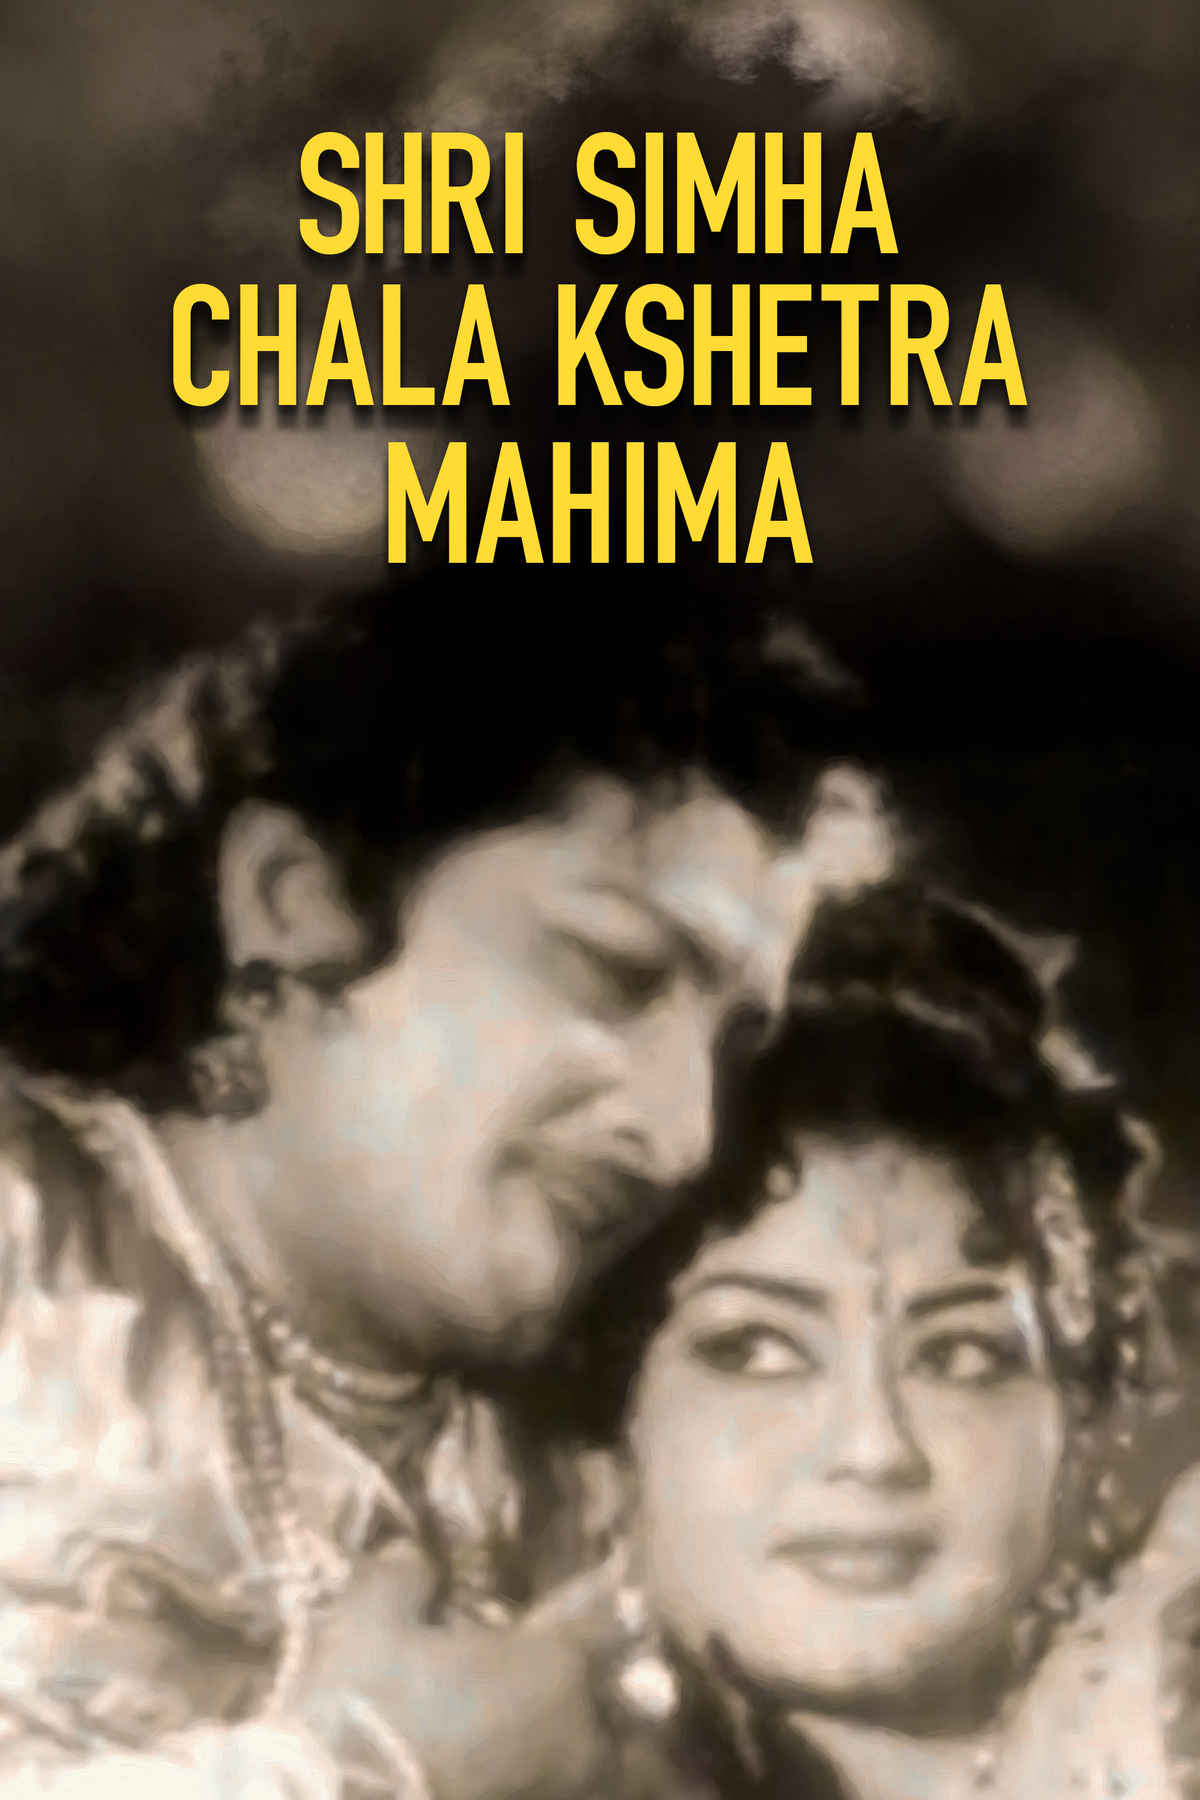 Krishna Kumari Best Movies, TV Shows and Web Series List